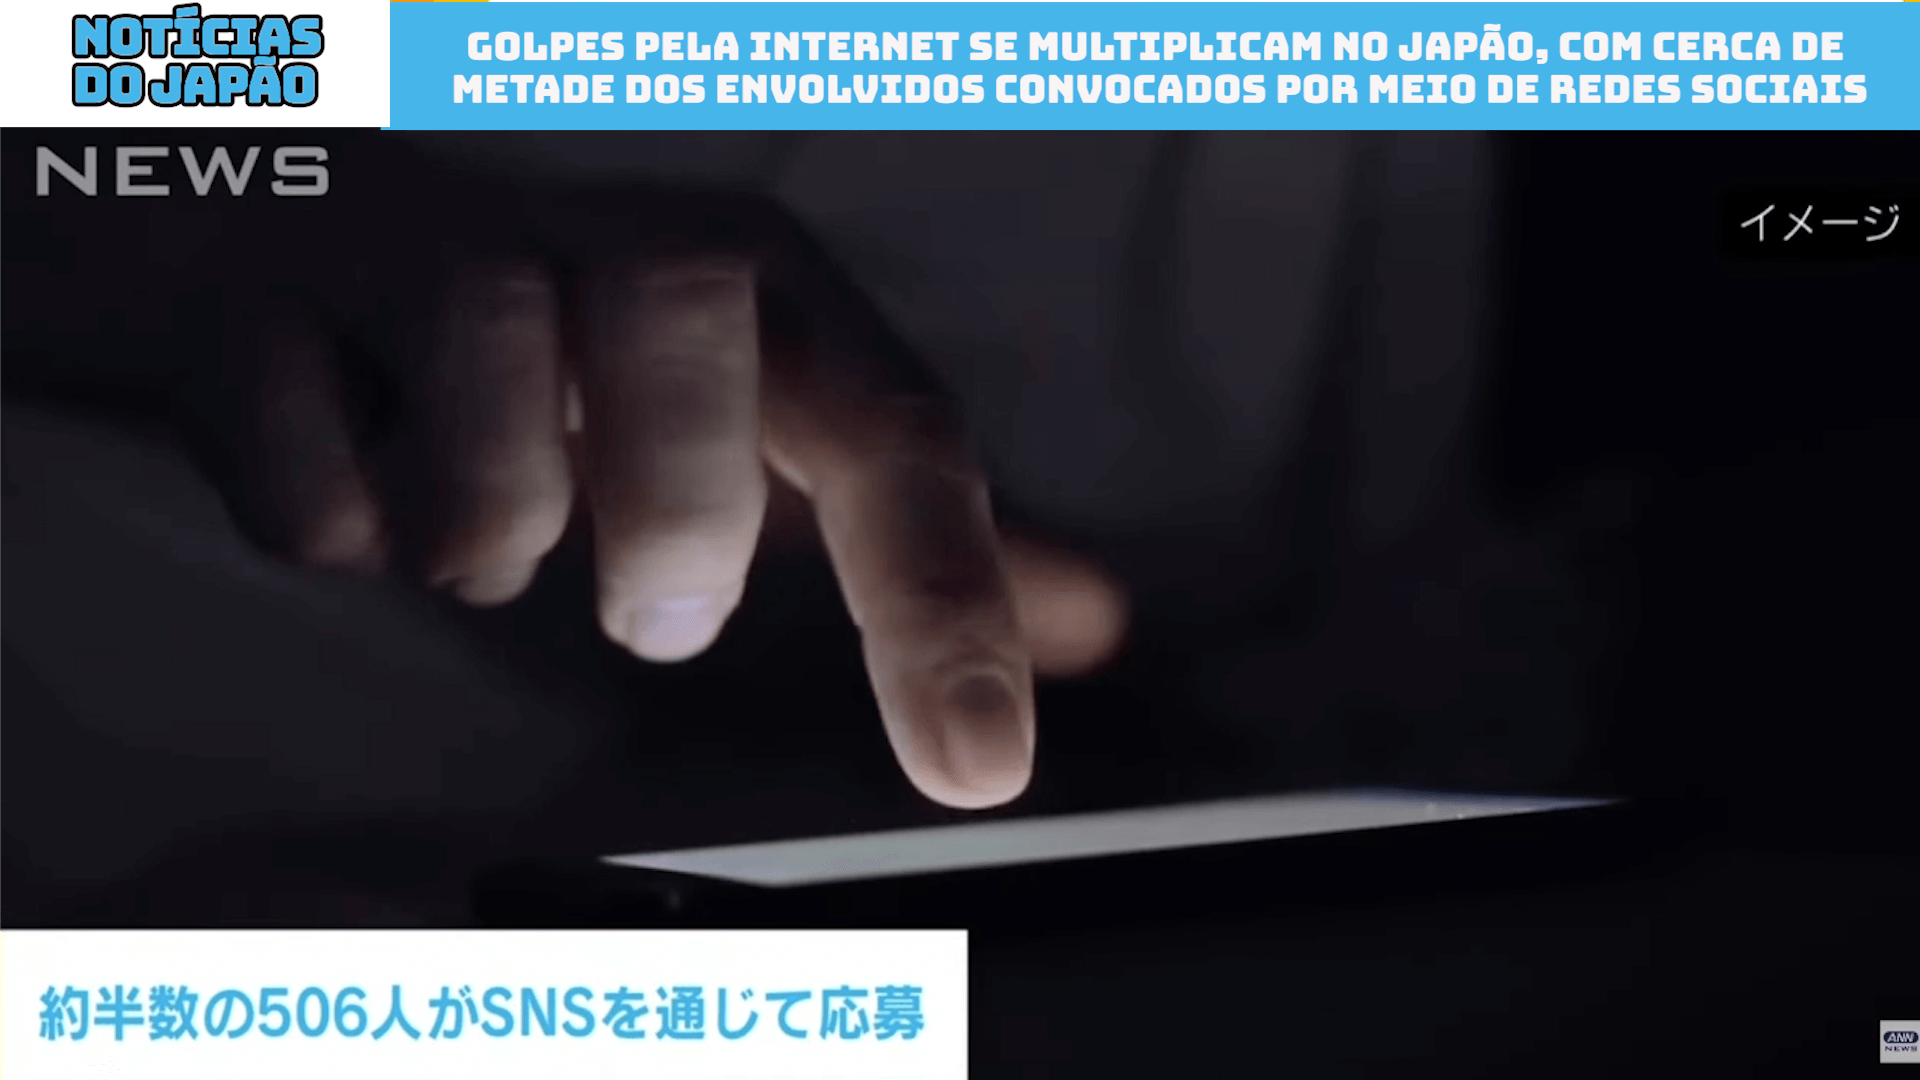 Golpes pela internet se multiplicam no Japão, com cerca de metade dos envolvidos convocados por meio de redes sociais